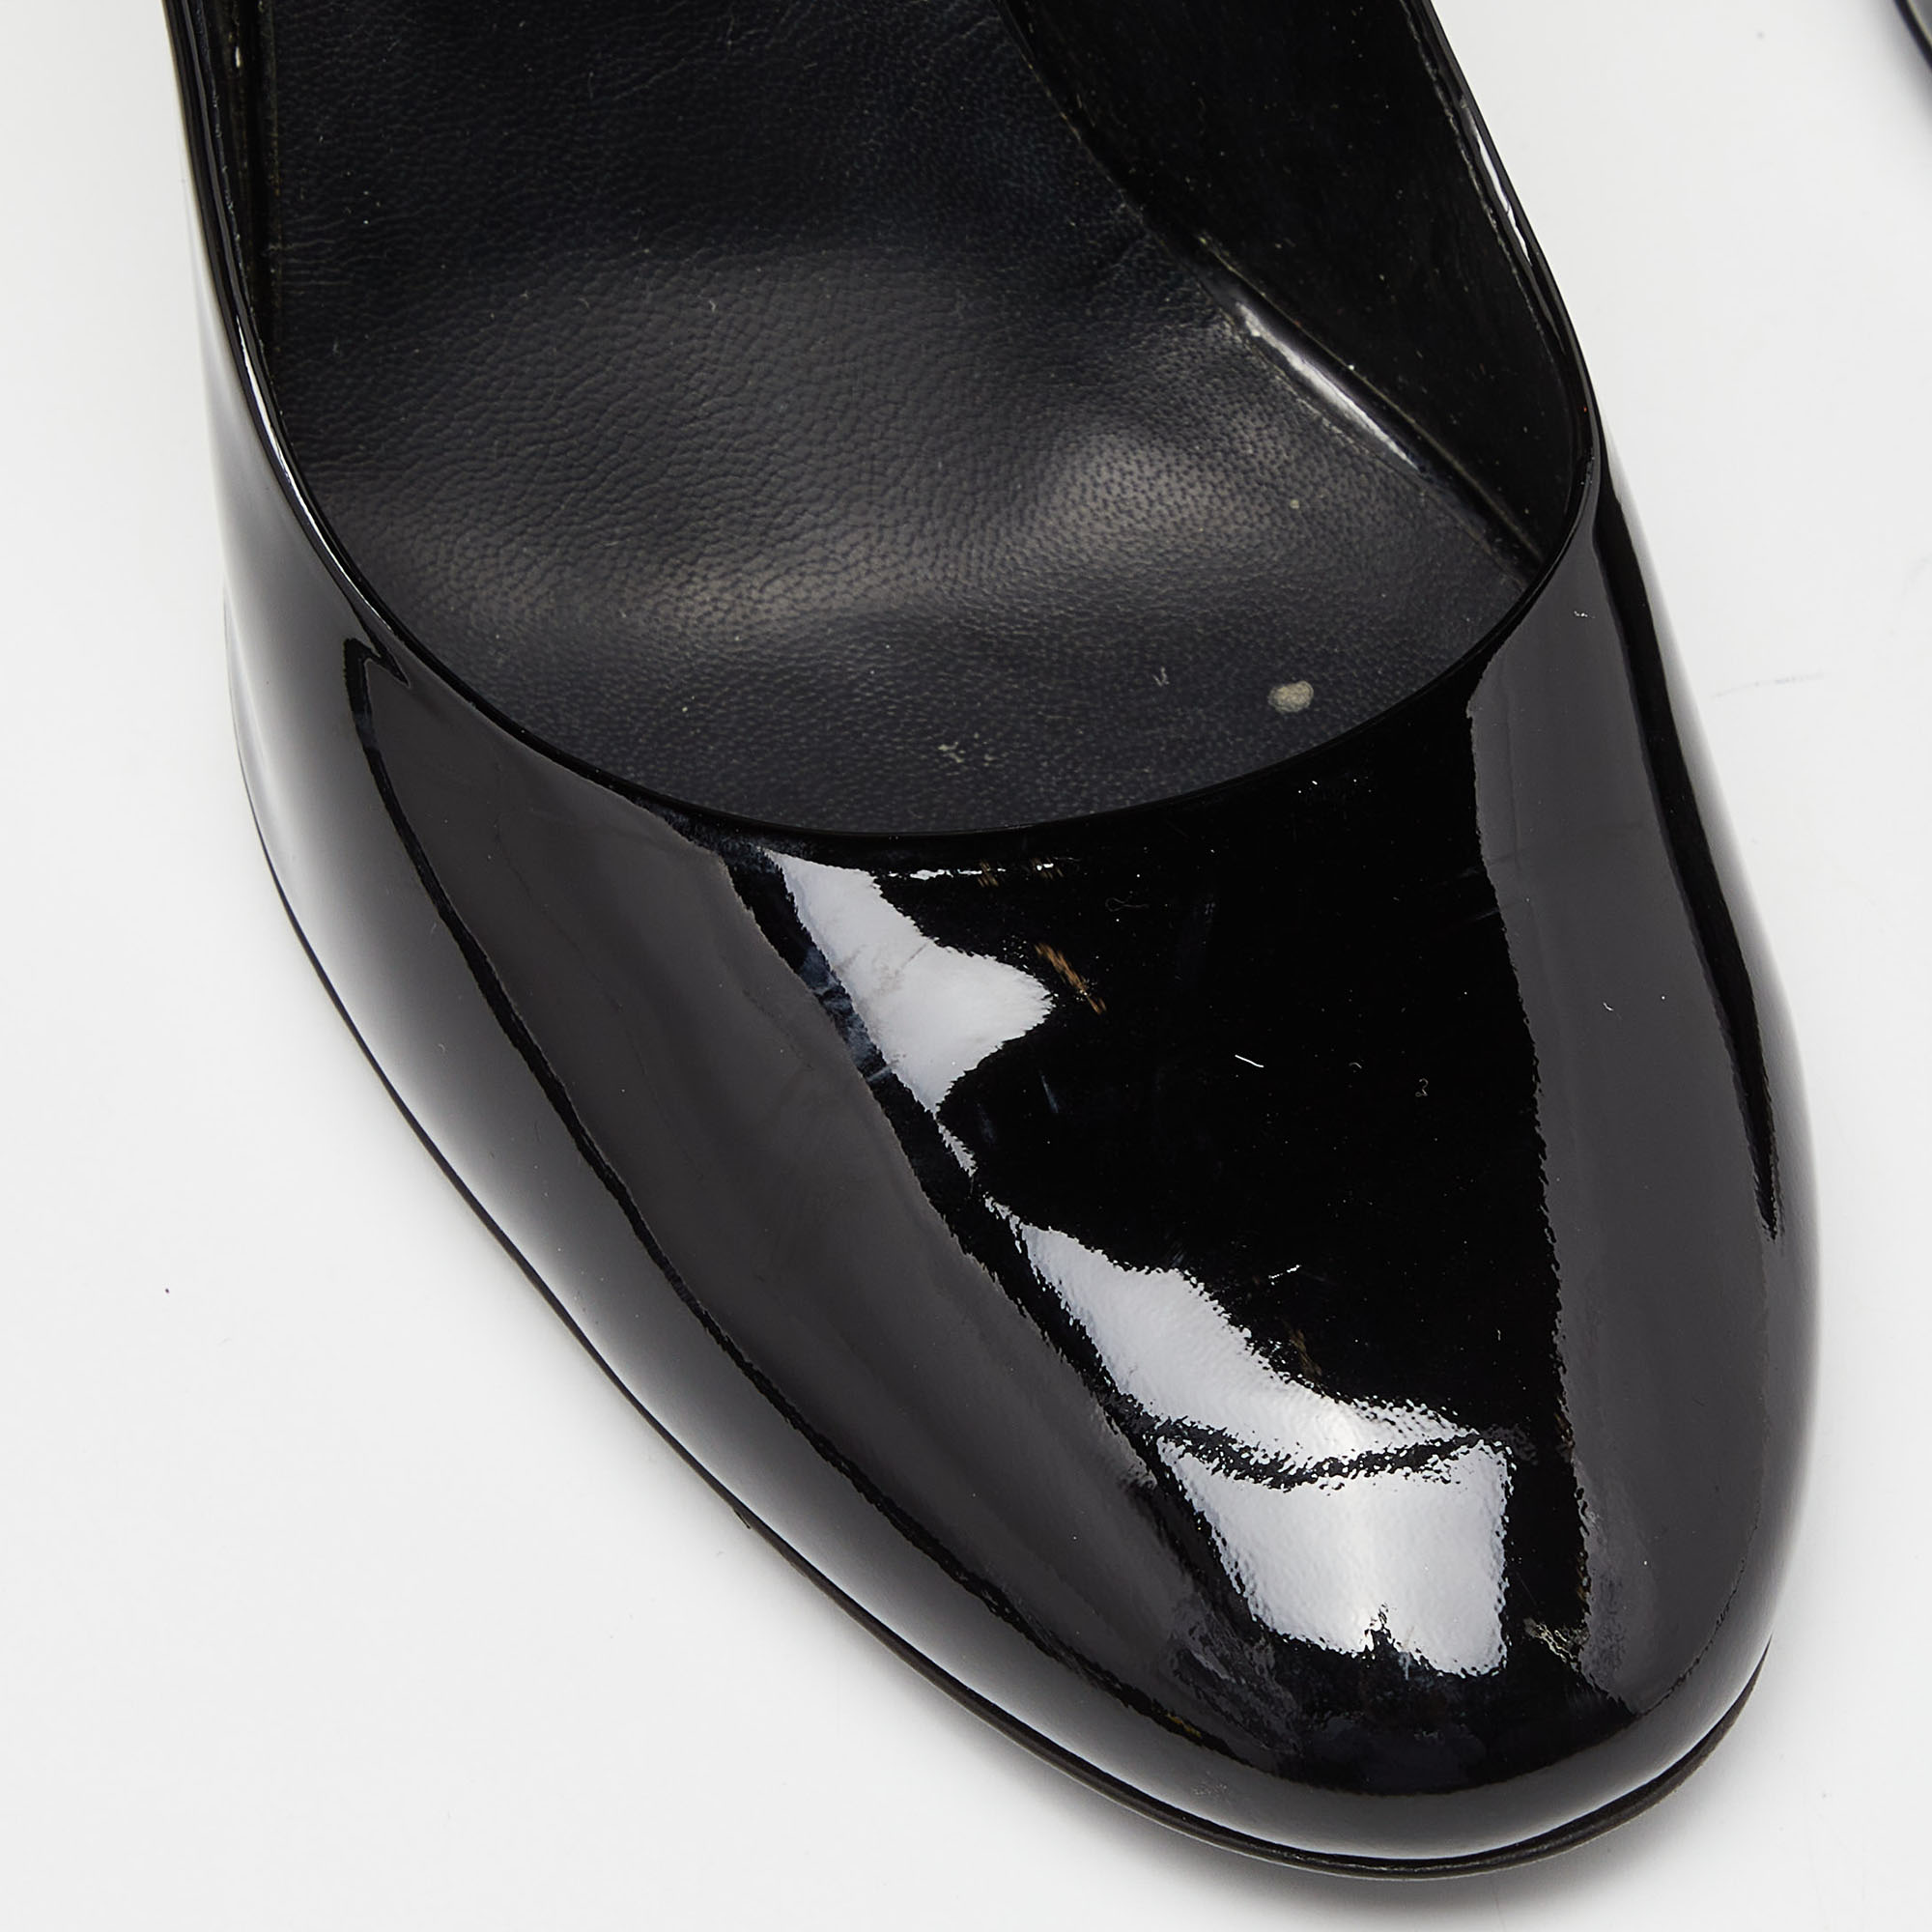 Fendi Black Patent Leather Pumps Size 40.5